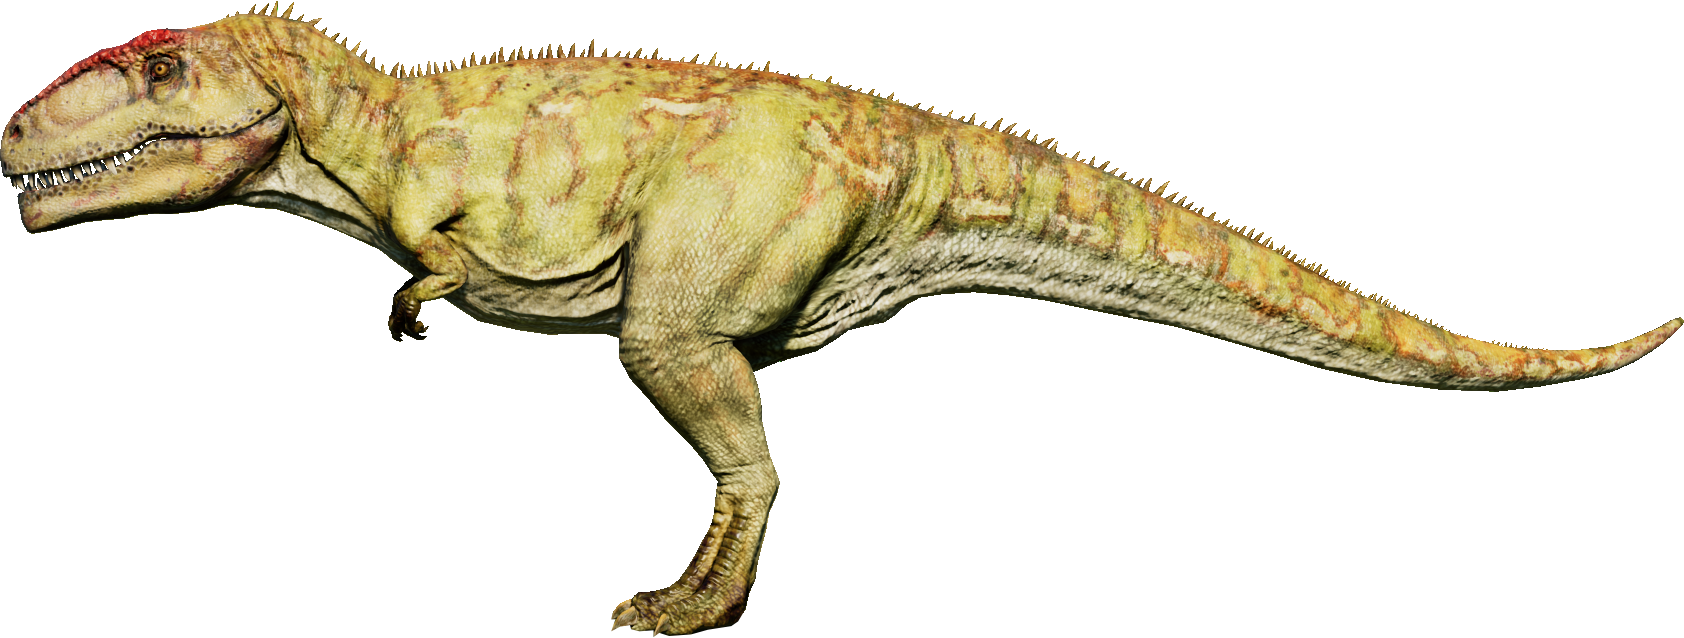 Jurassic World - Giganotosaurus, JURASSIC WORLD